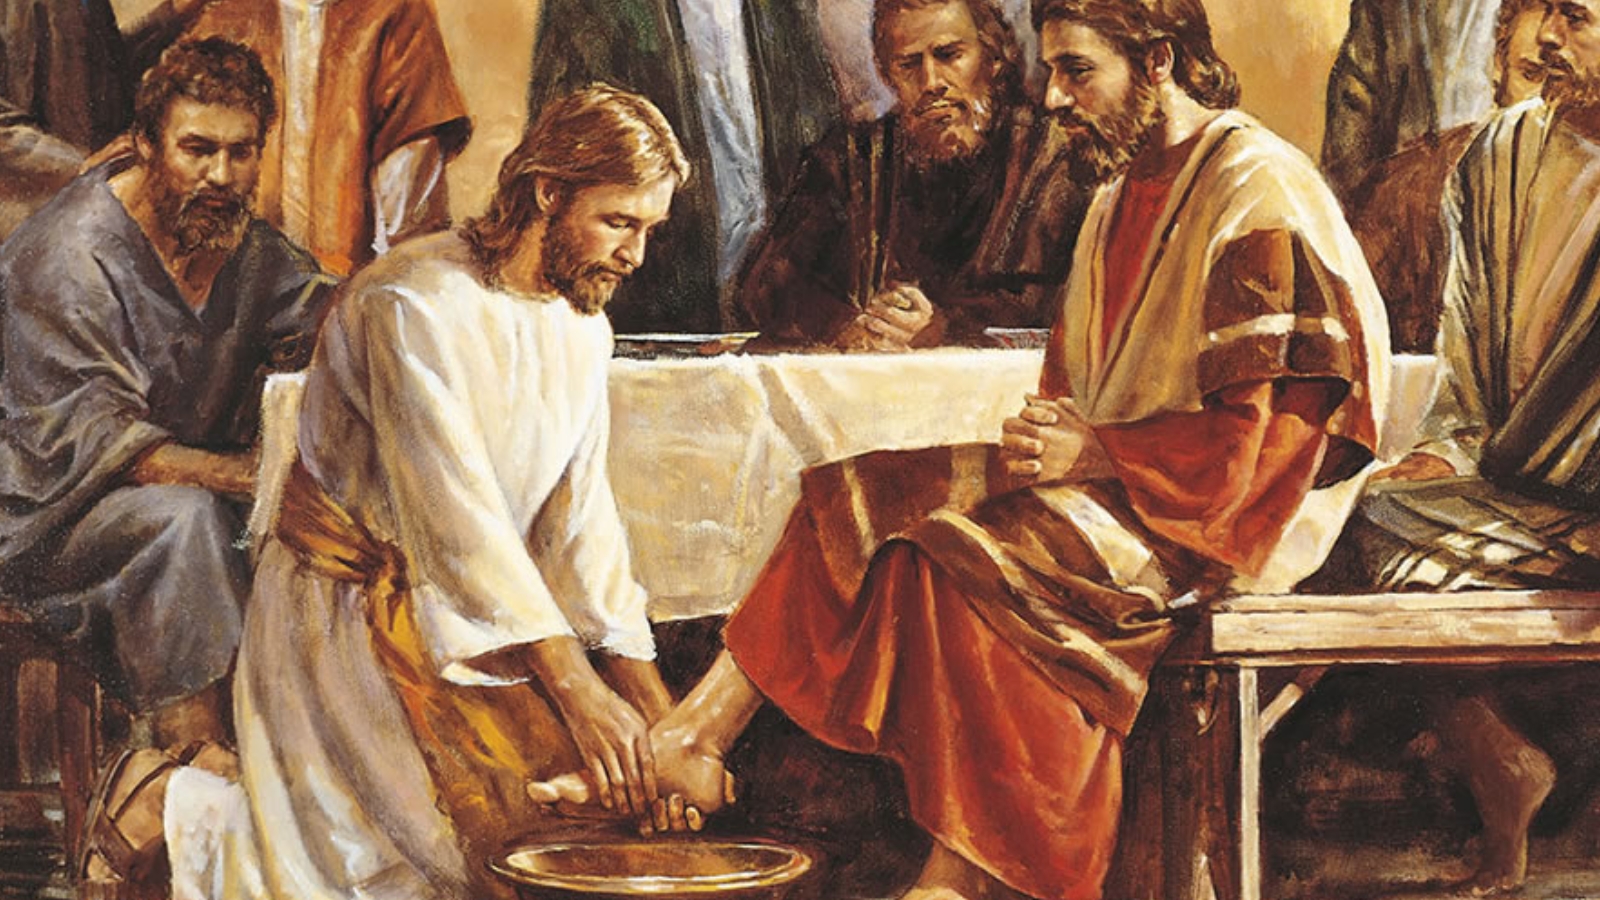 Zašto je Isus oprao noge učenicima